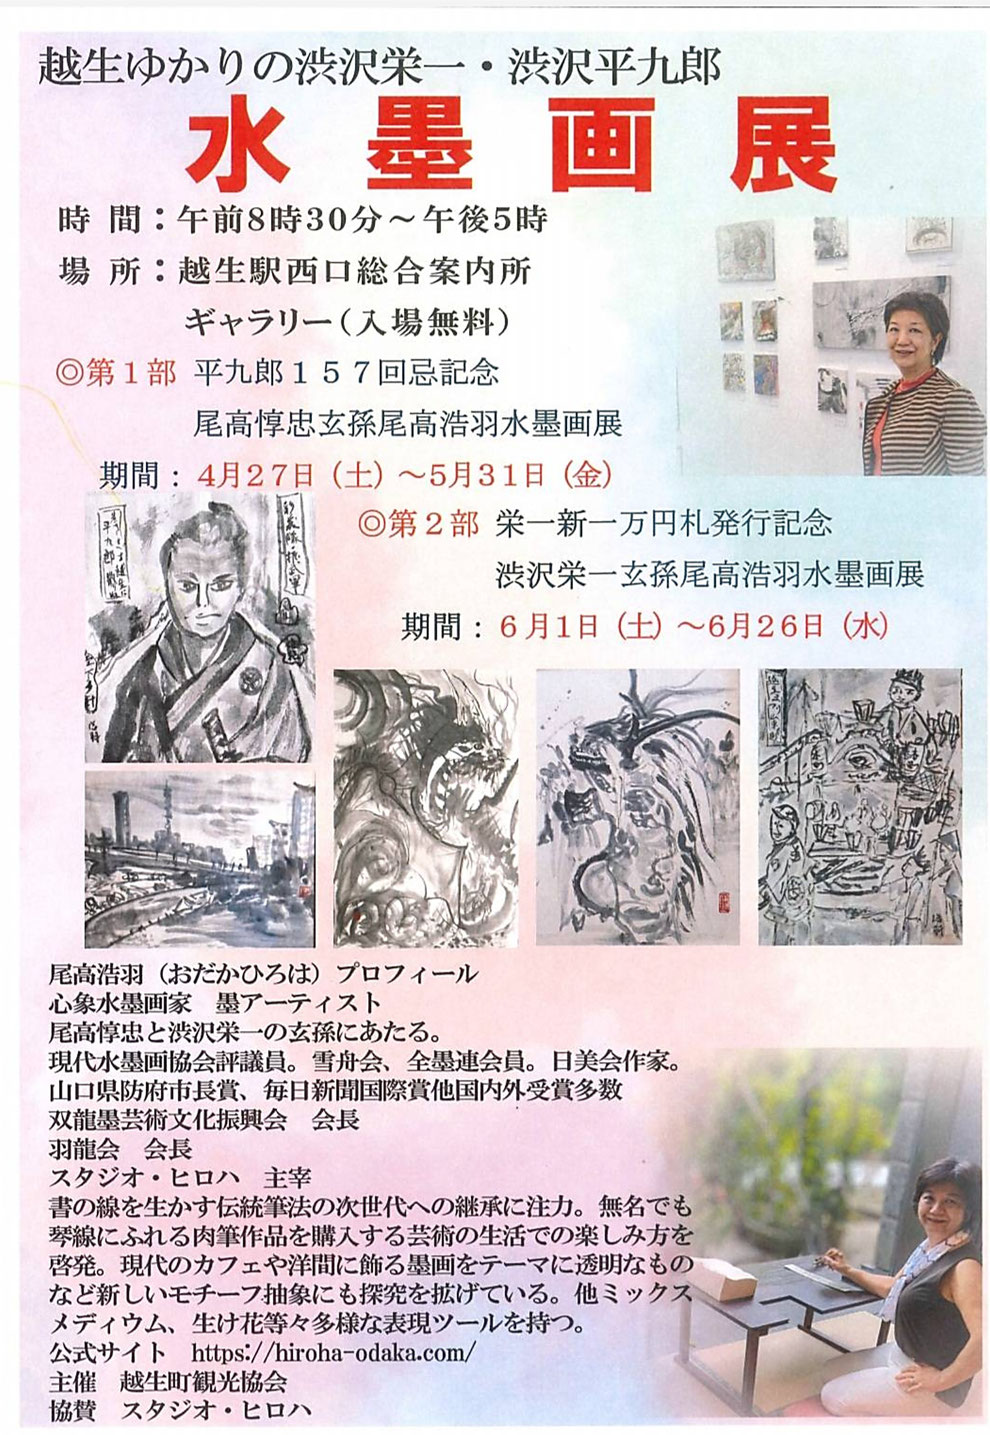 「越生ゆかりの渋沢栄一・渋沢平九郎 水墨画展」パンフレット